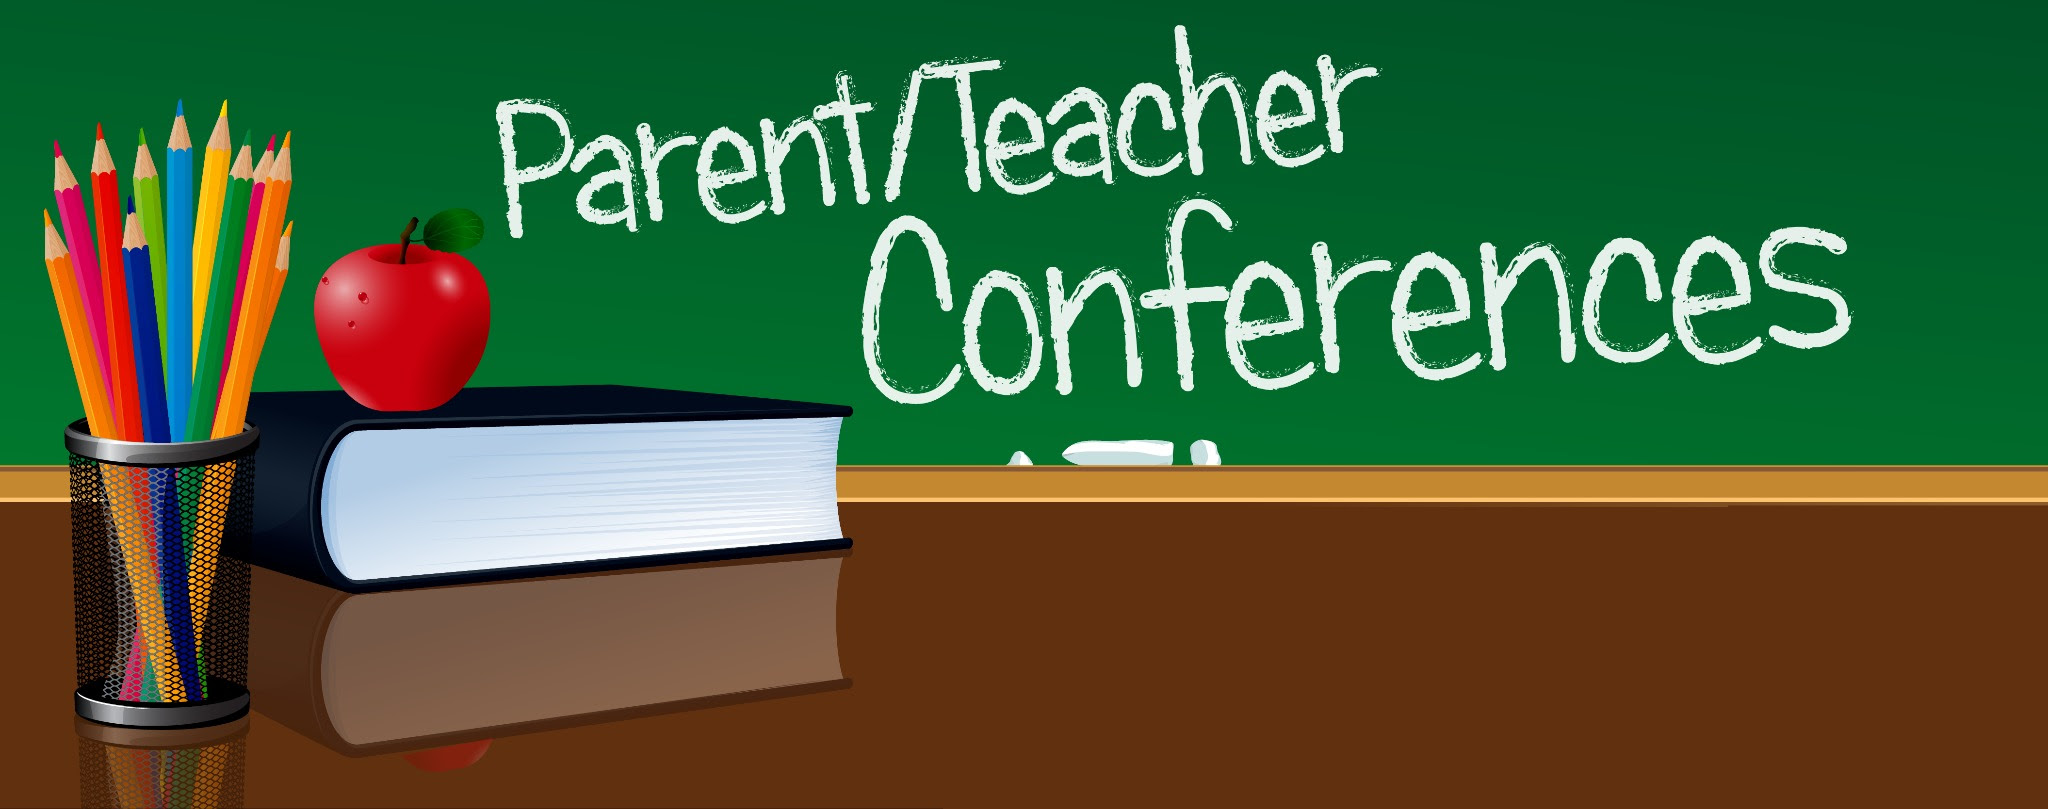 Teacher conferences